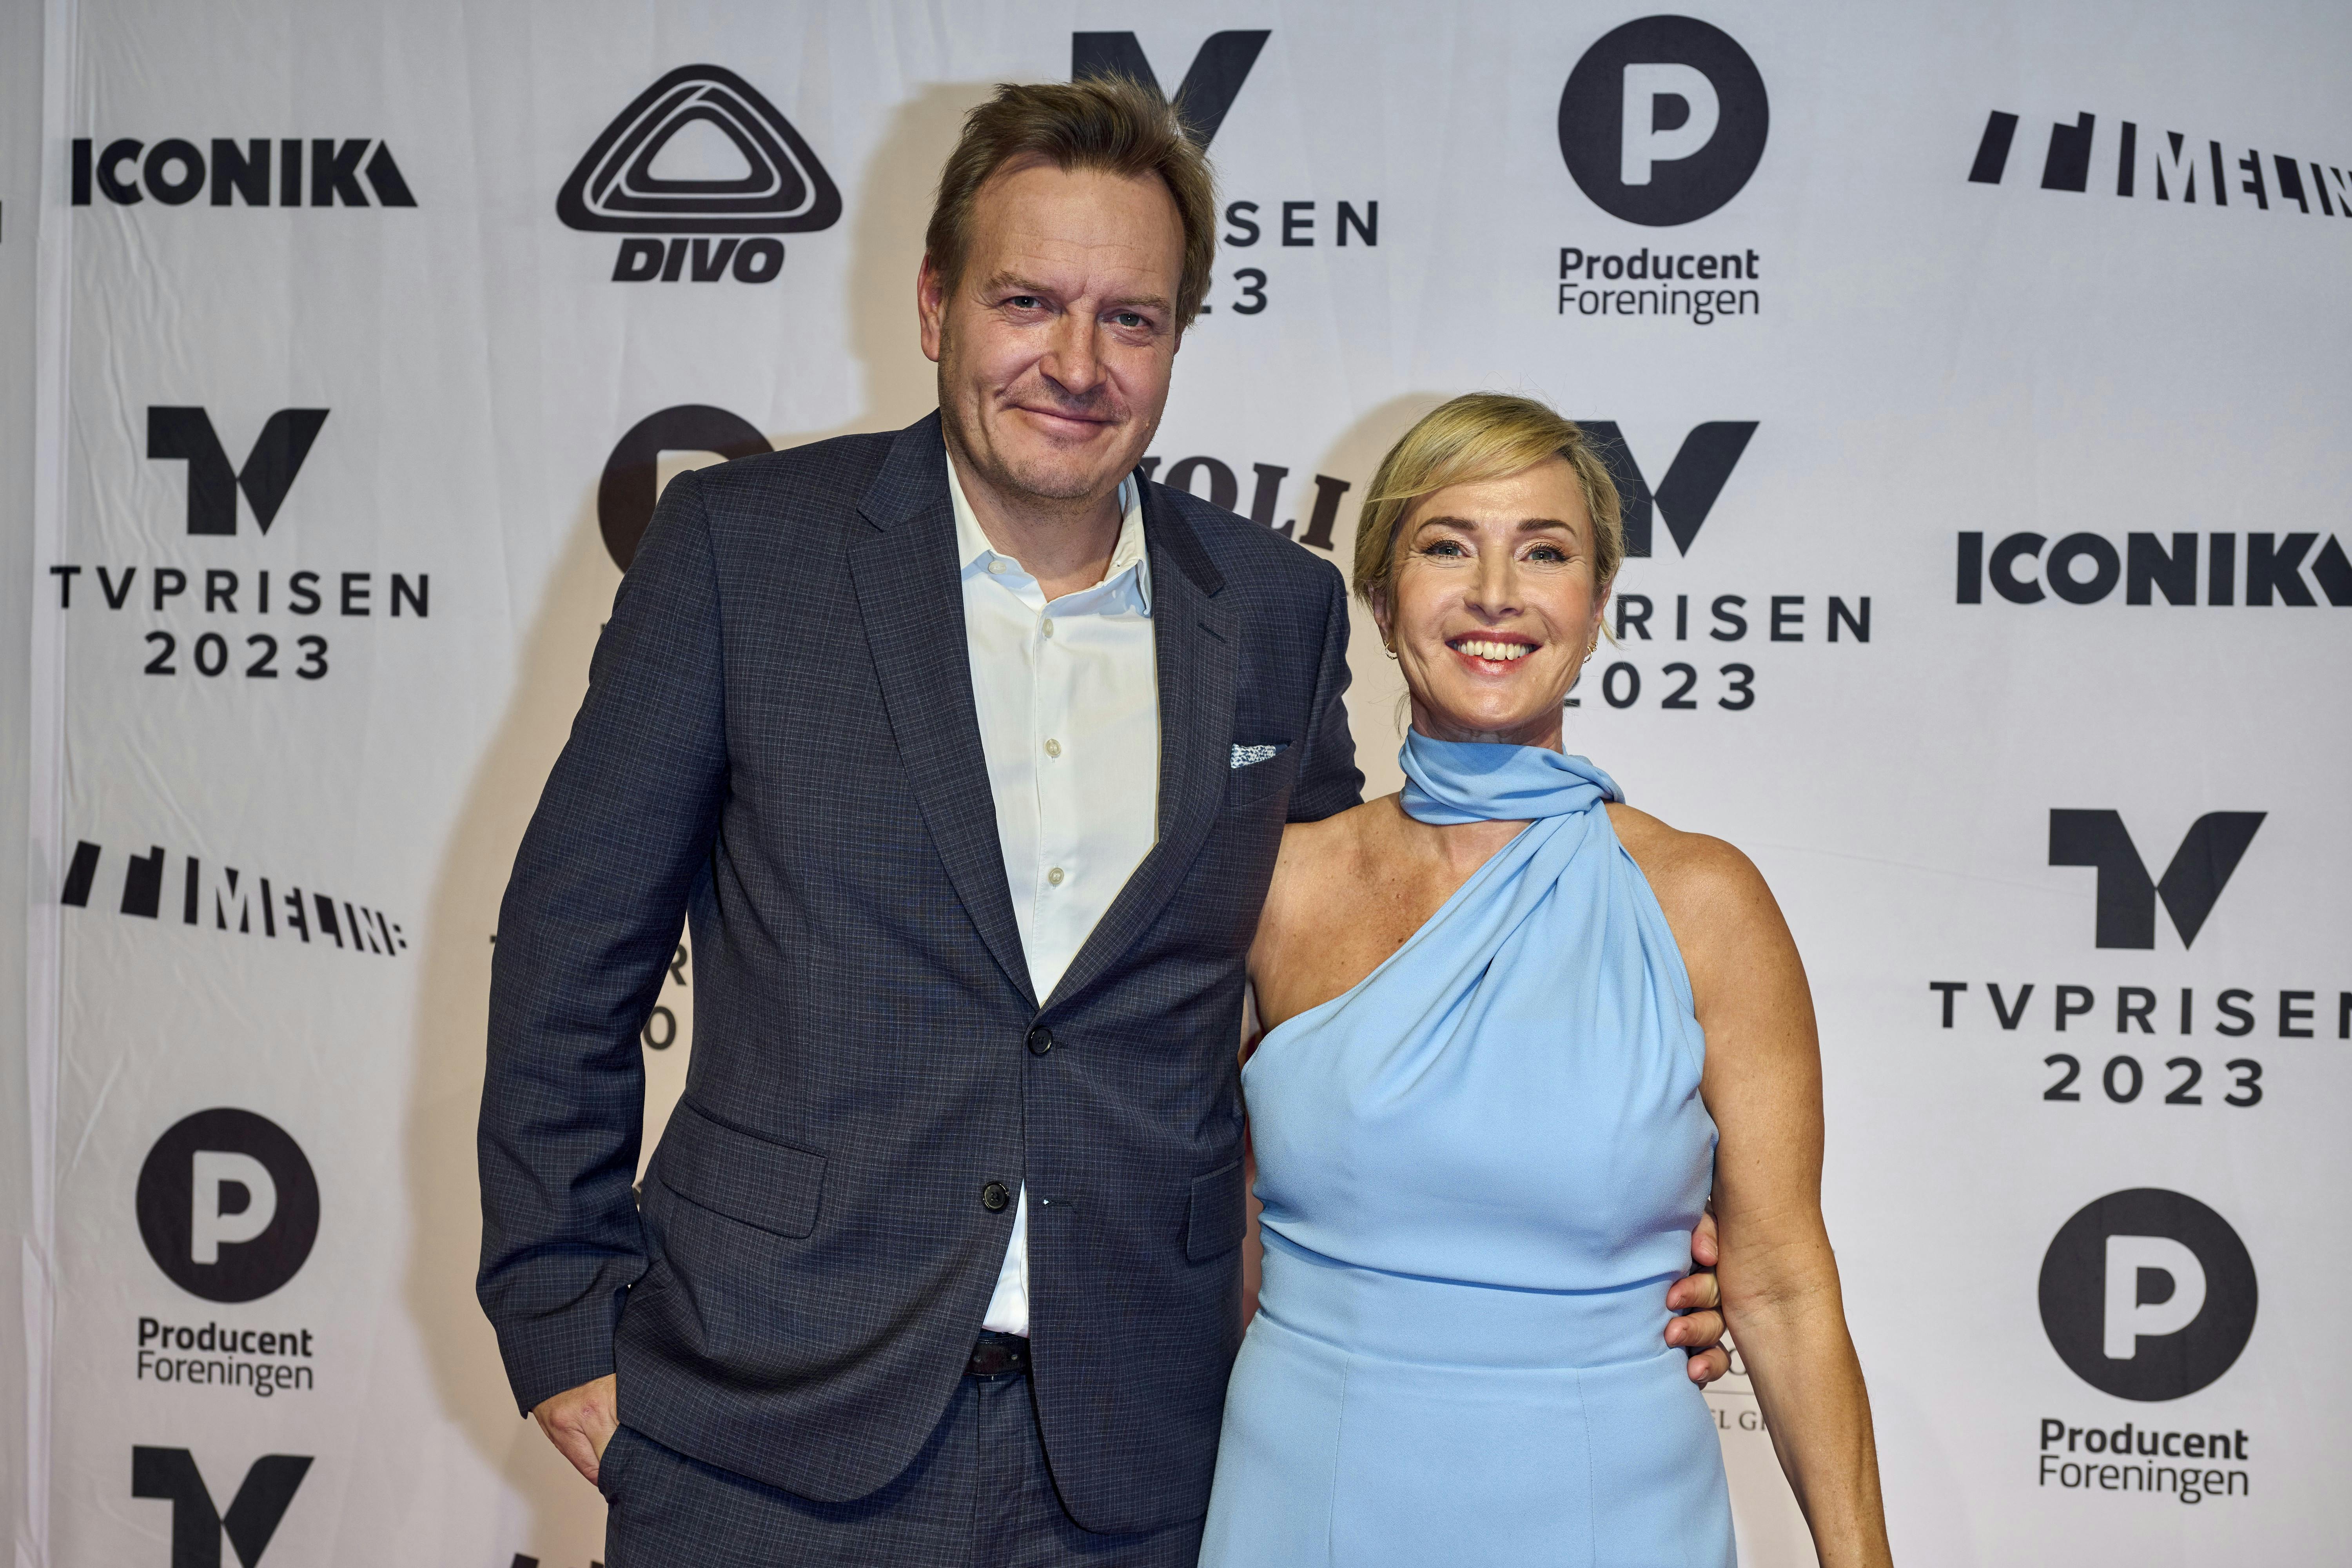 Rasmus Tantholdt og Natasja Crone deler onsdag en glædelig nyhed. Parret skal giftes!